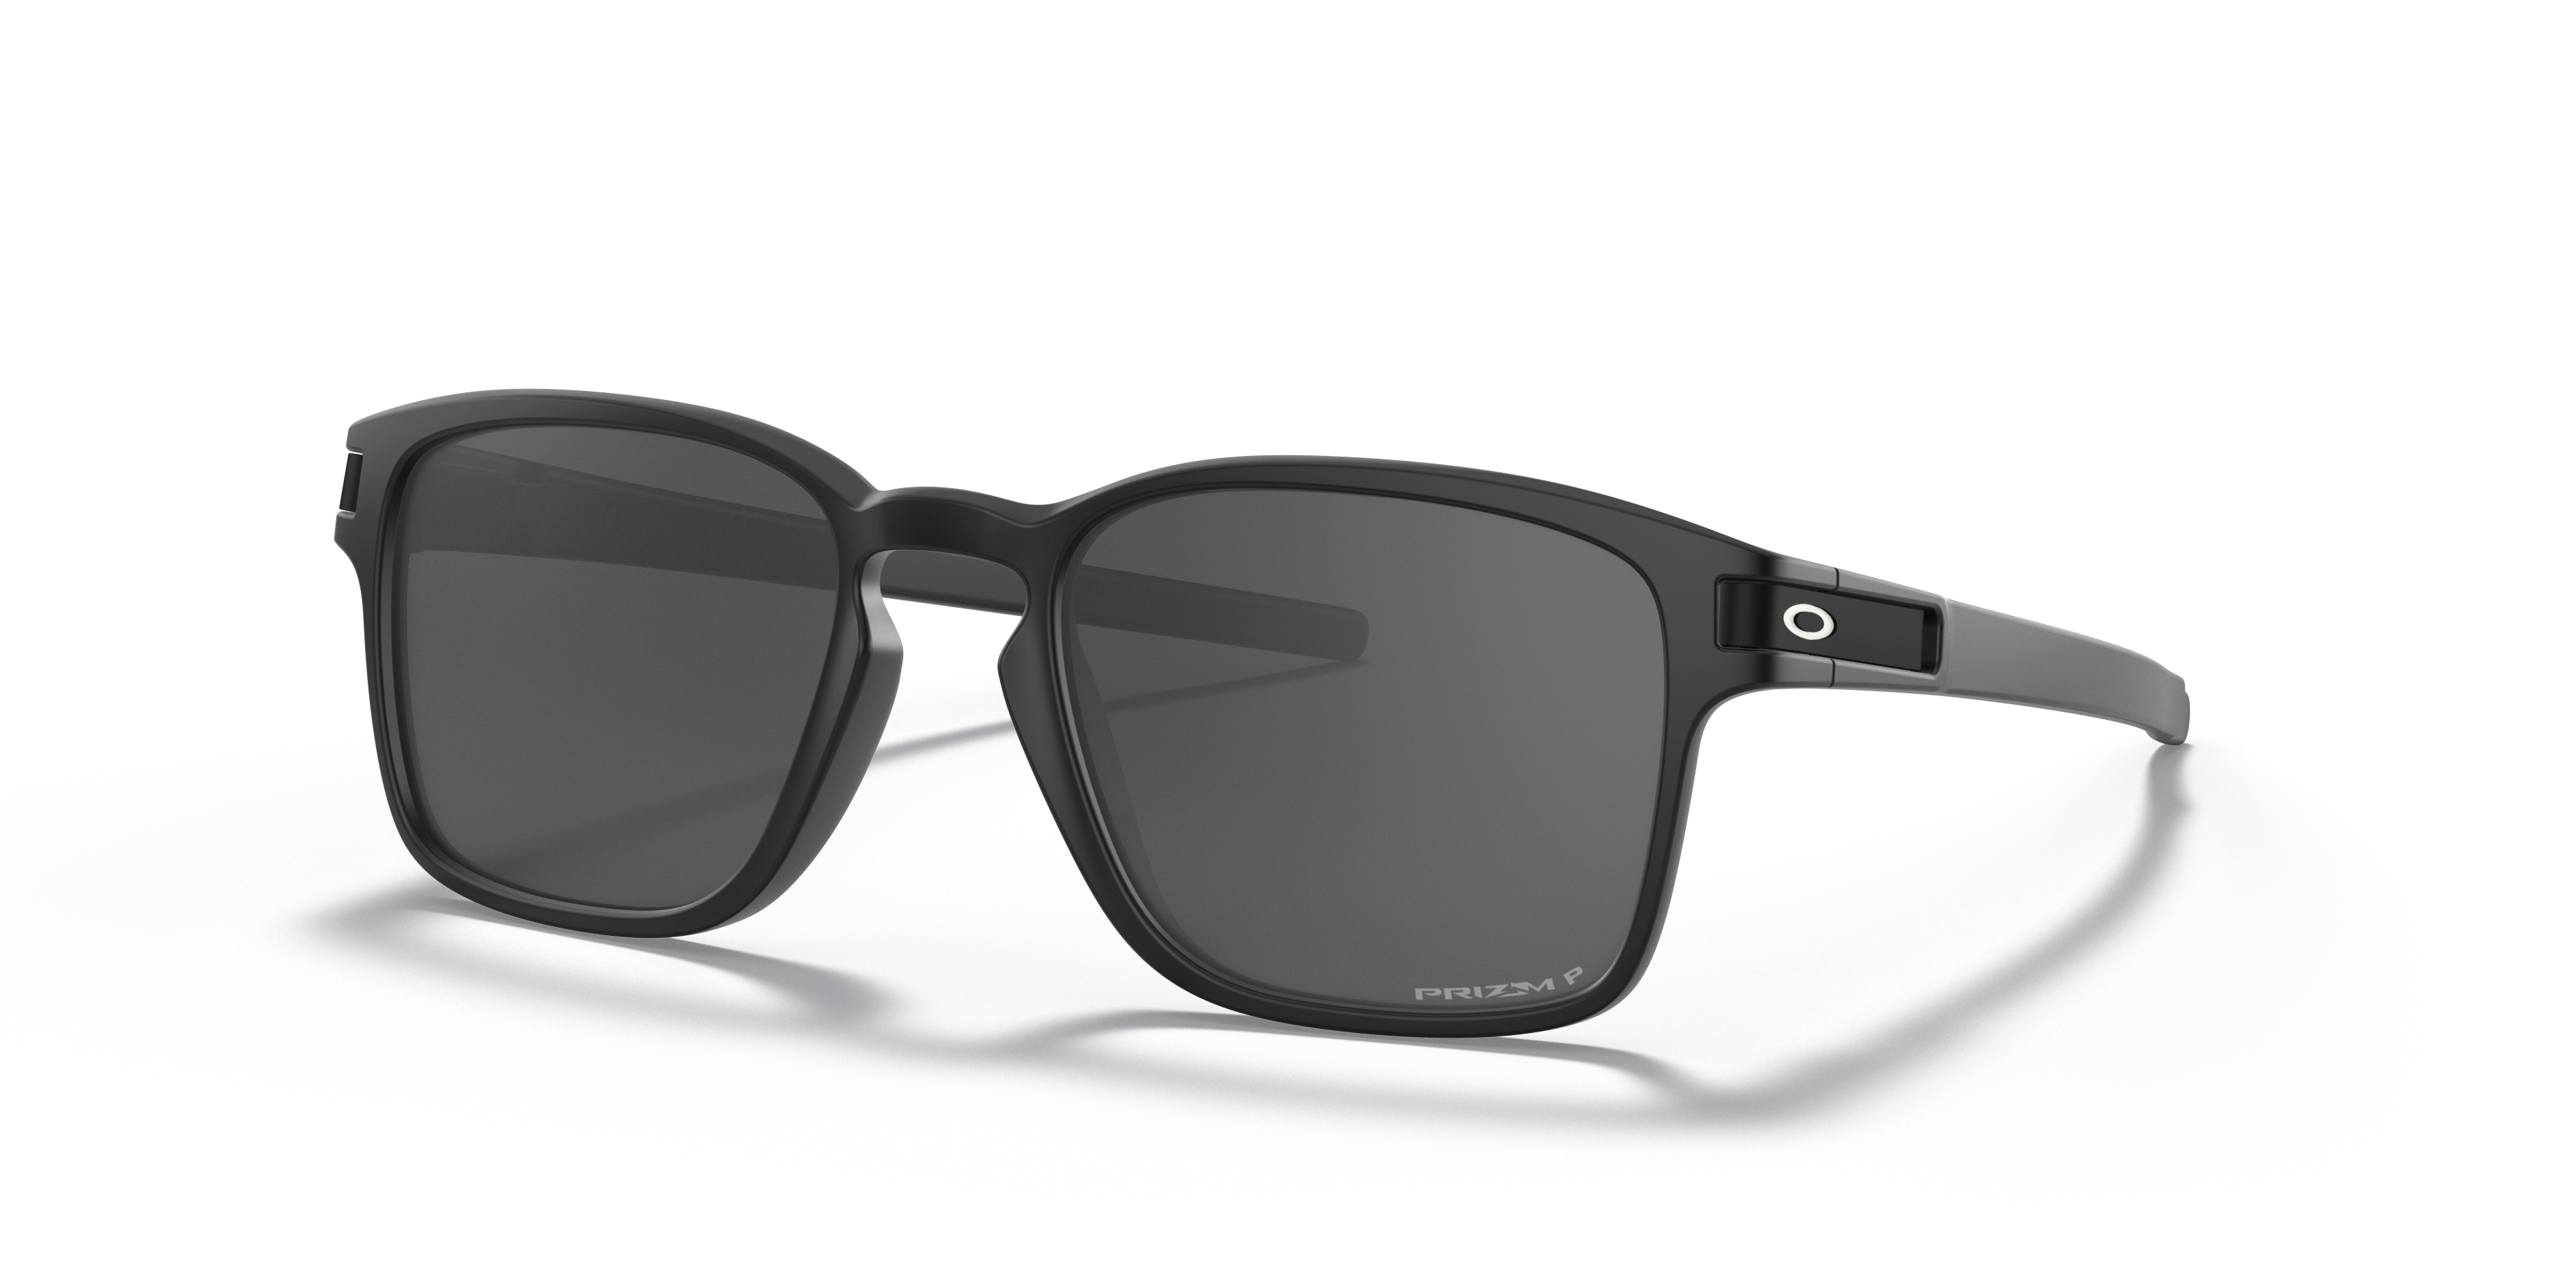 Oakley Men's Polarized Low Bridge Fit Sunglasses, Oo9358 Latch Sq 55 In Black